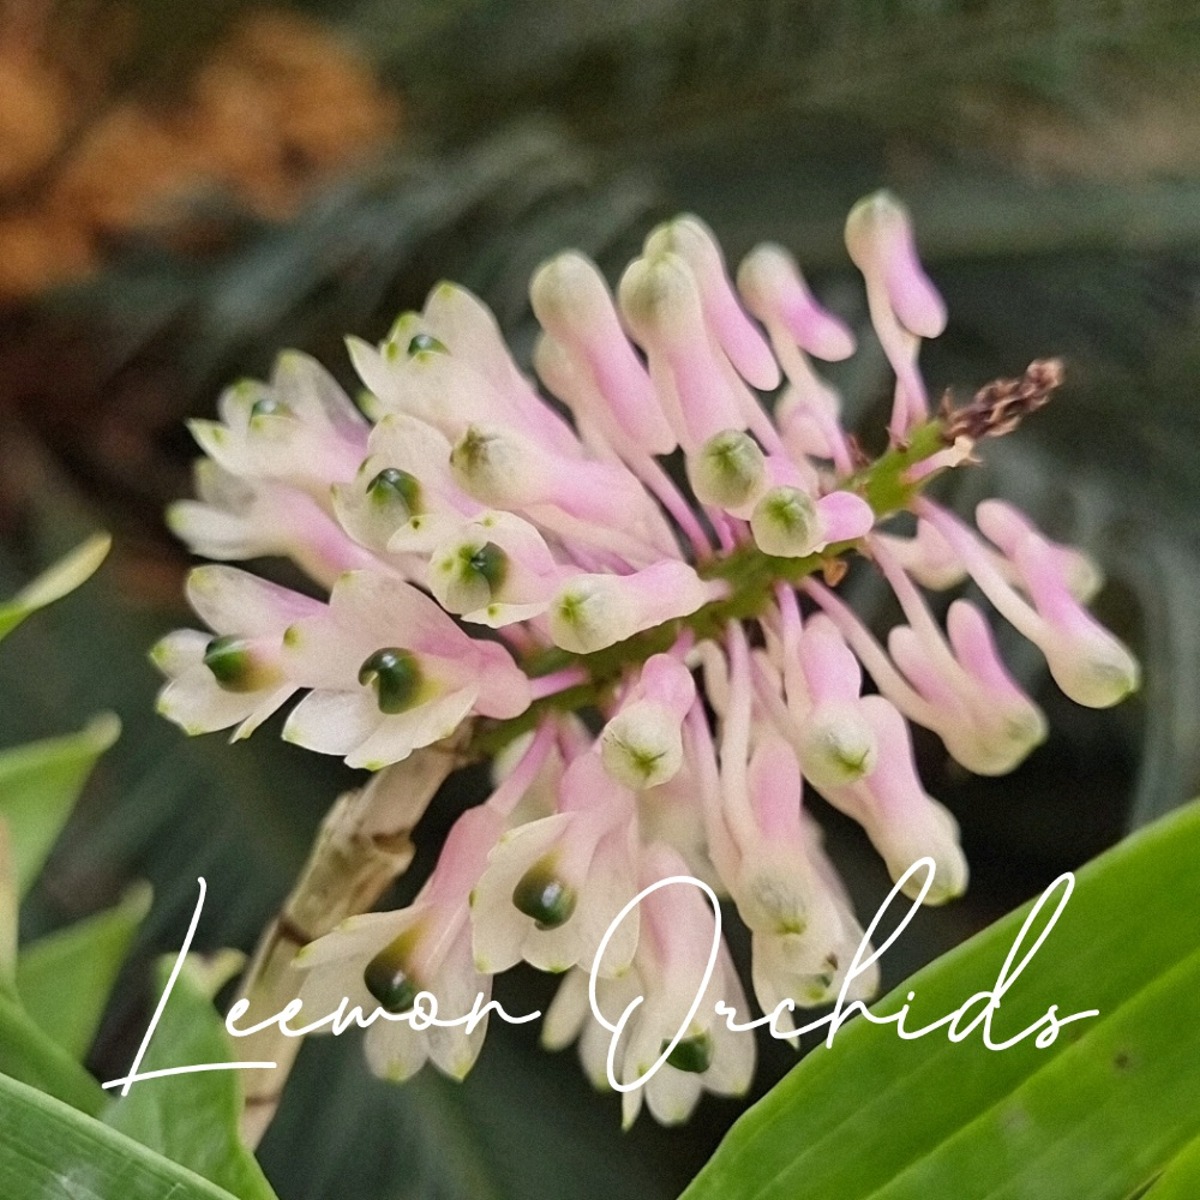 덴드로비움 스마일리아이 Dendrobium smilliae (온라인 한정재고: 1)